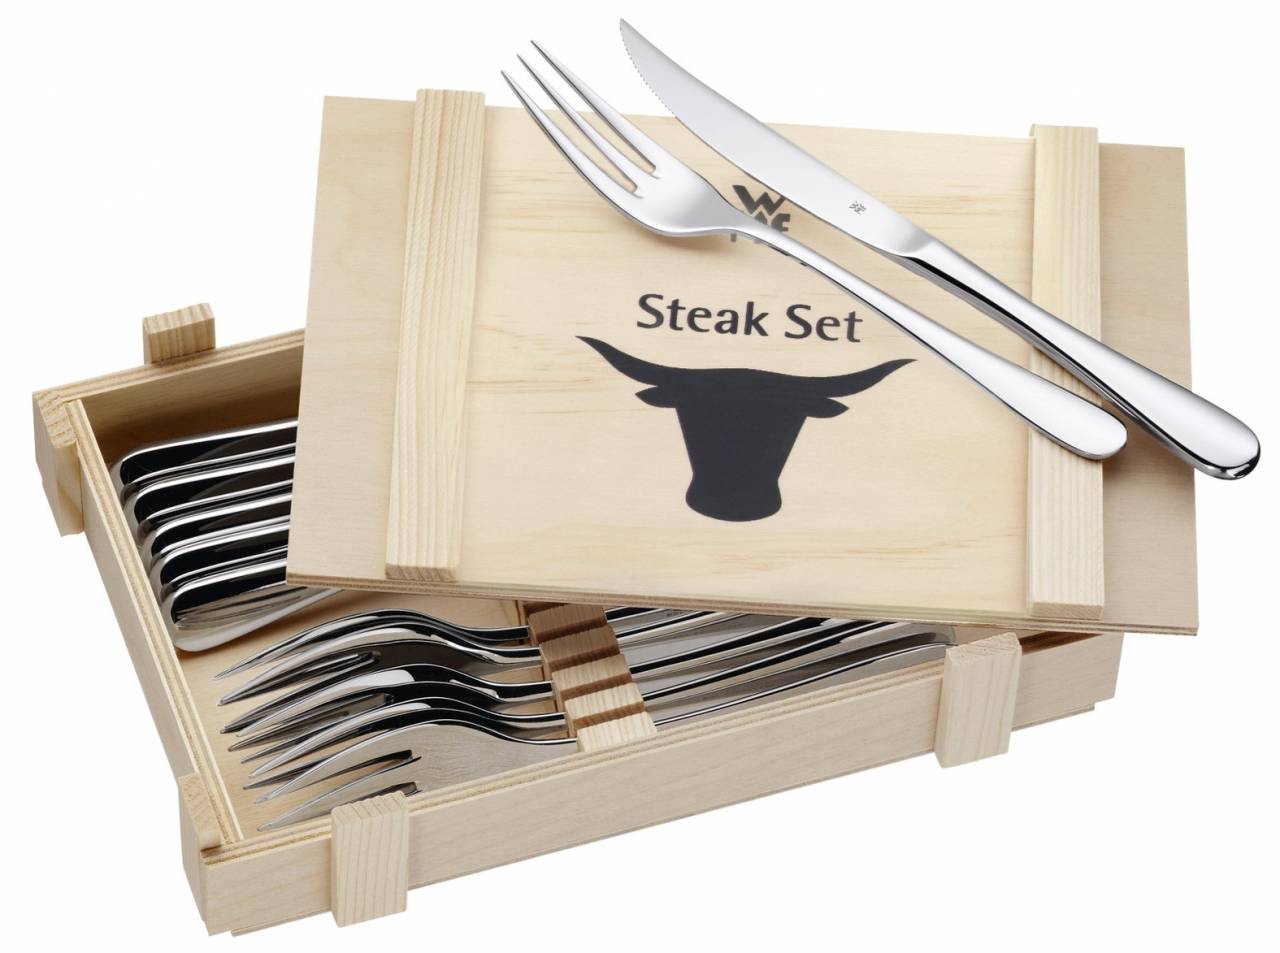 steakove-pribory-v-drevenej-krabici-12ks-www.wmfsk.sk-4.jpg